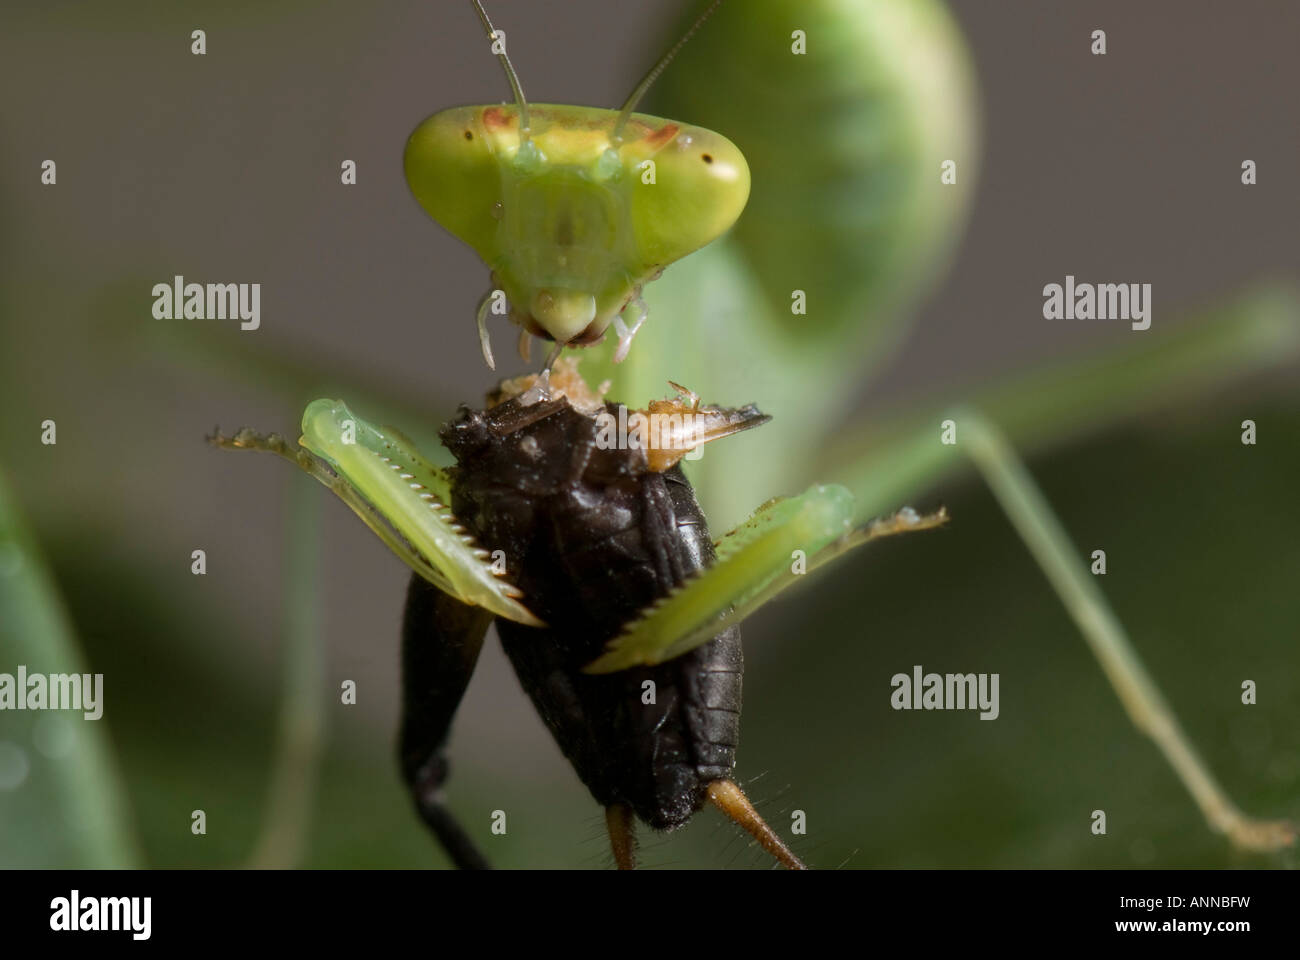 Praying mantis eating cricket Stock Photo